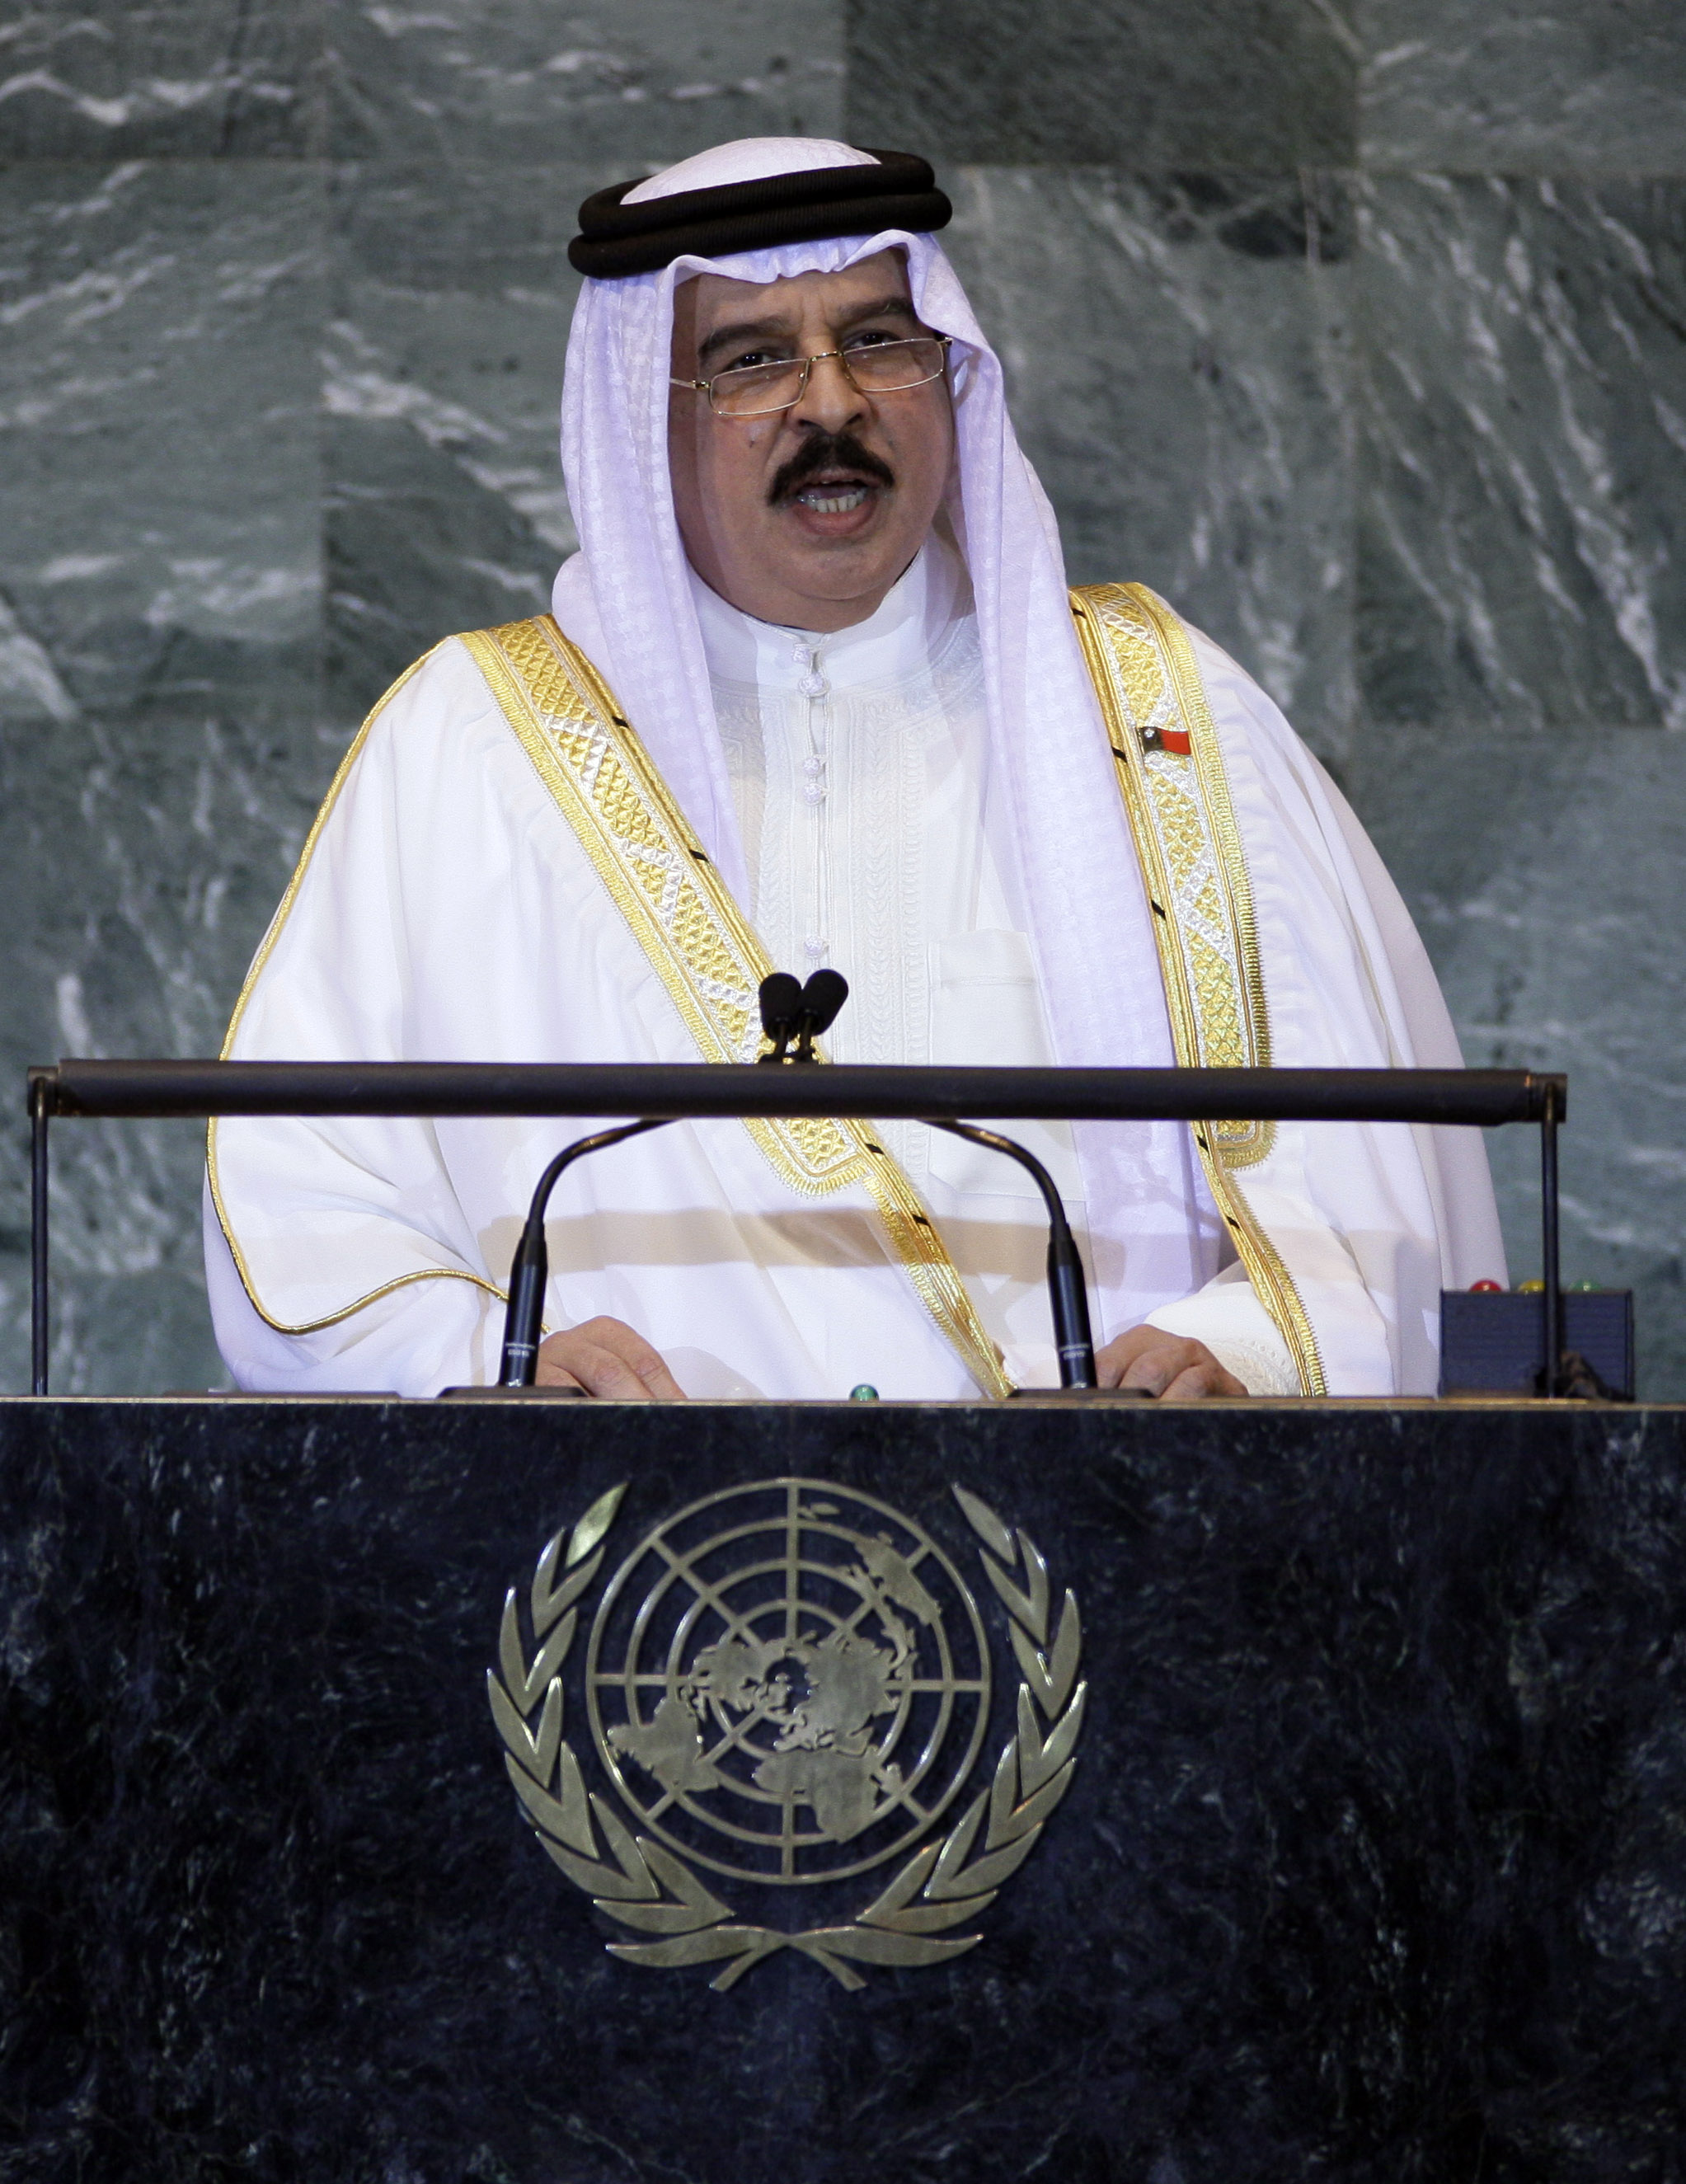 Listans andra nykomling är Bahrain där upproret mot kung Hamad bin Issa Al Khalifa ännu pågår, de senaste dagarna i ökad styrka. Regimen har stängt ned flera människorättsorganisationers sajter, smutskastat aktivister offentligt och fängslat kända bloggar